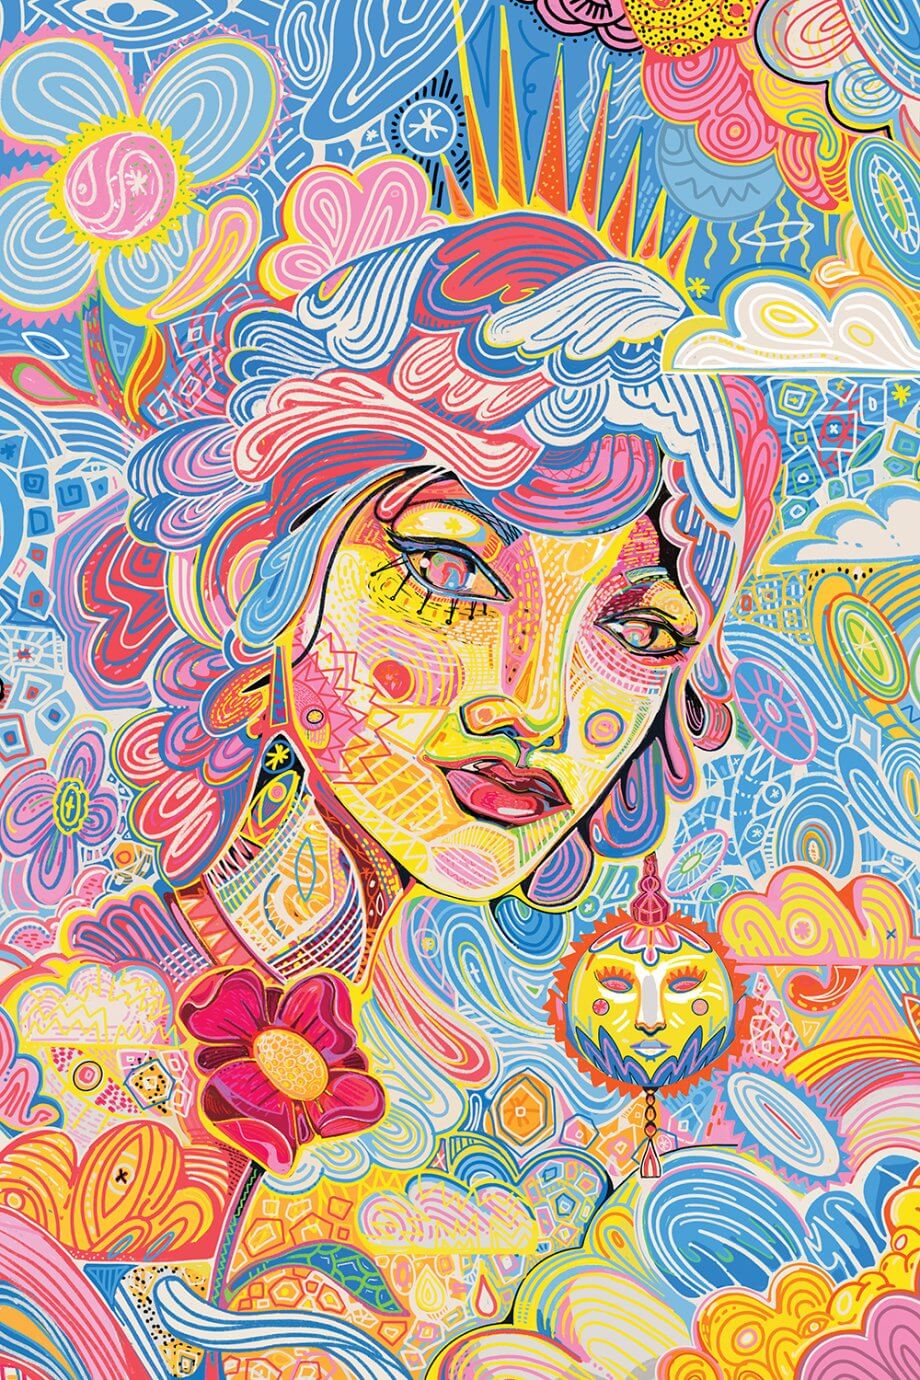 Yo Az digital art - colorful portrait of woman